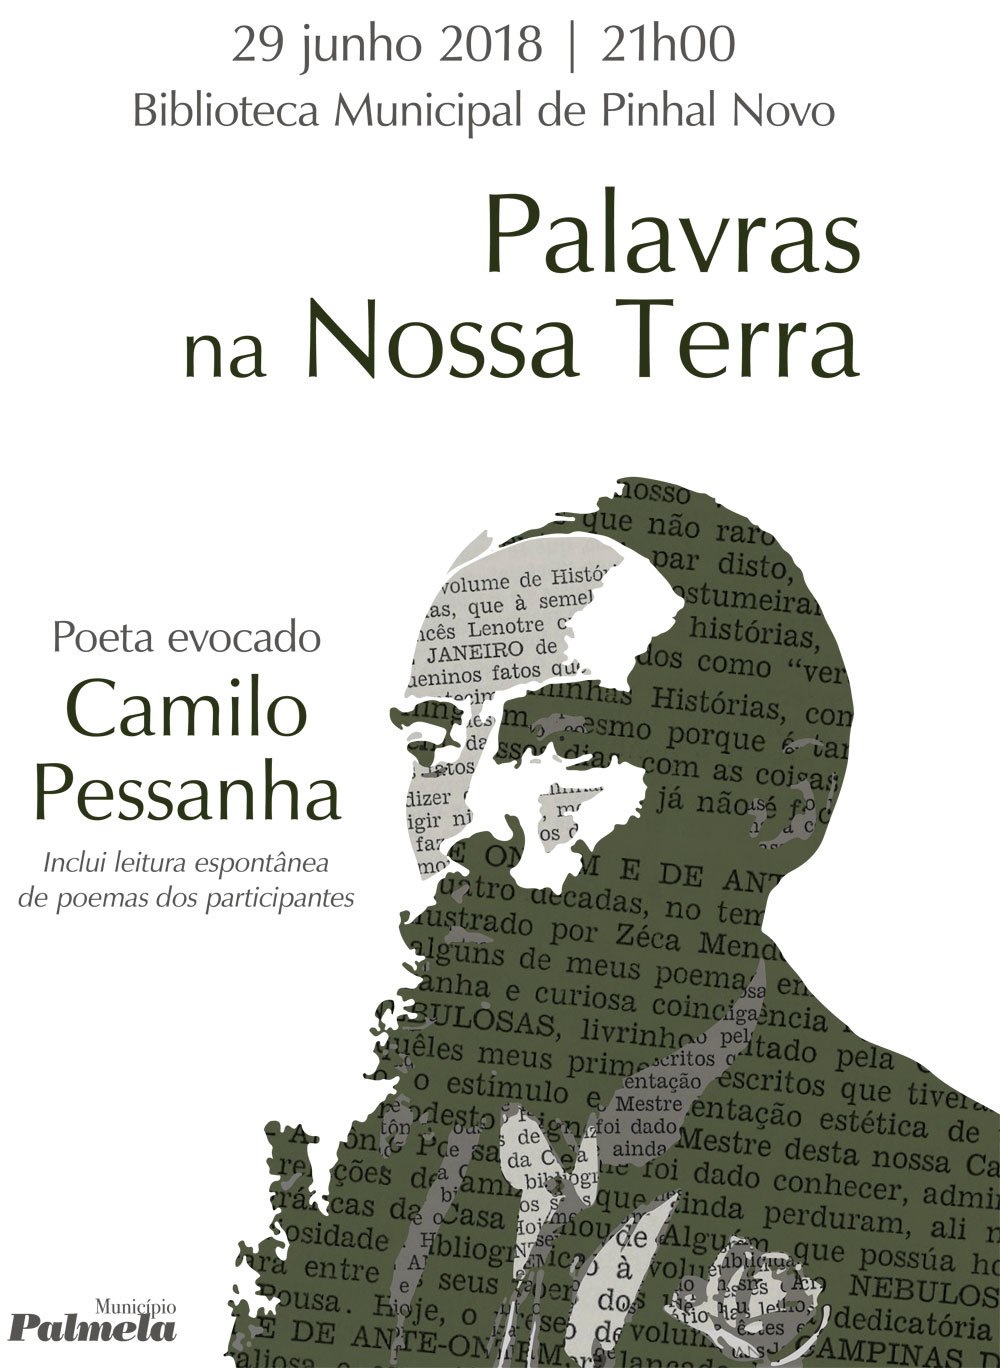  “Palavras na Nossa Terra” evoca poeta Camilo Pessanha